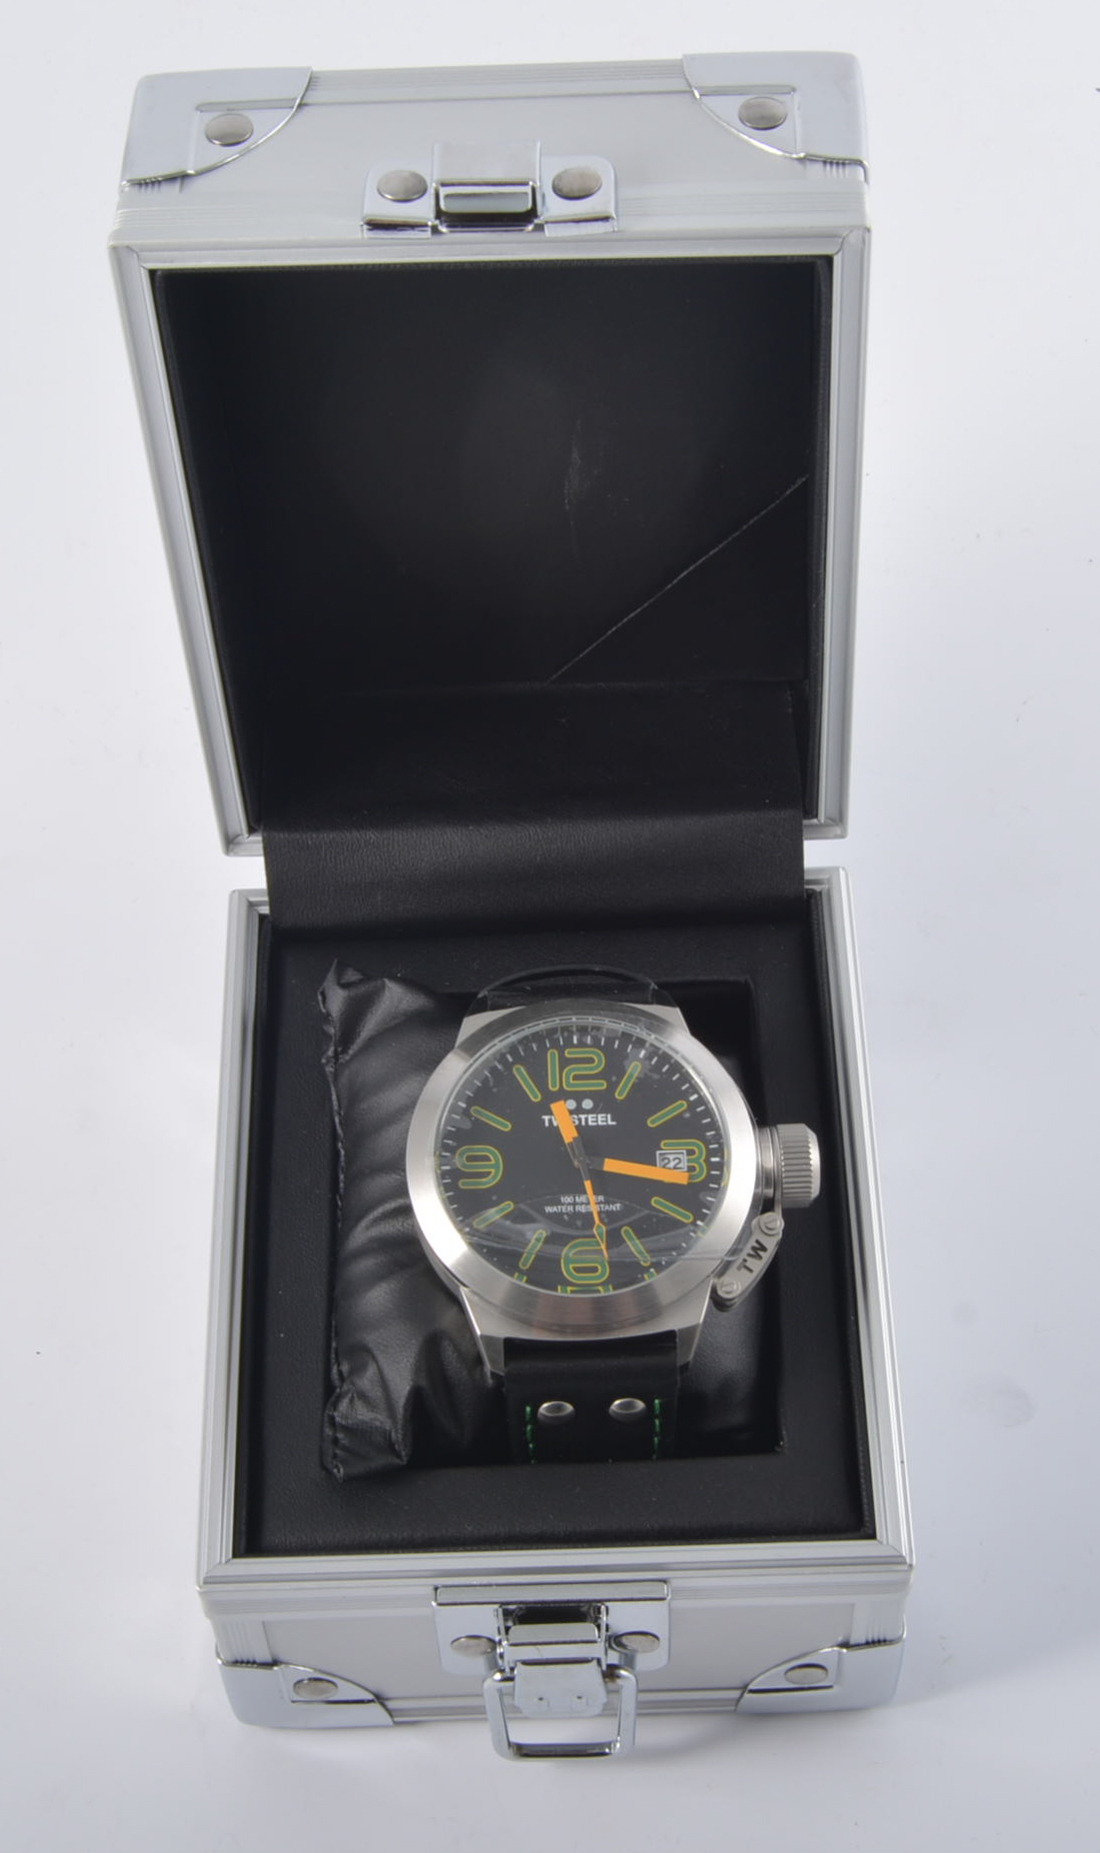 Gentlemans TW Steel wrist watch, 100 metre water resistant,